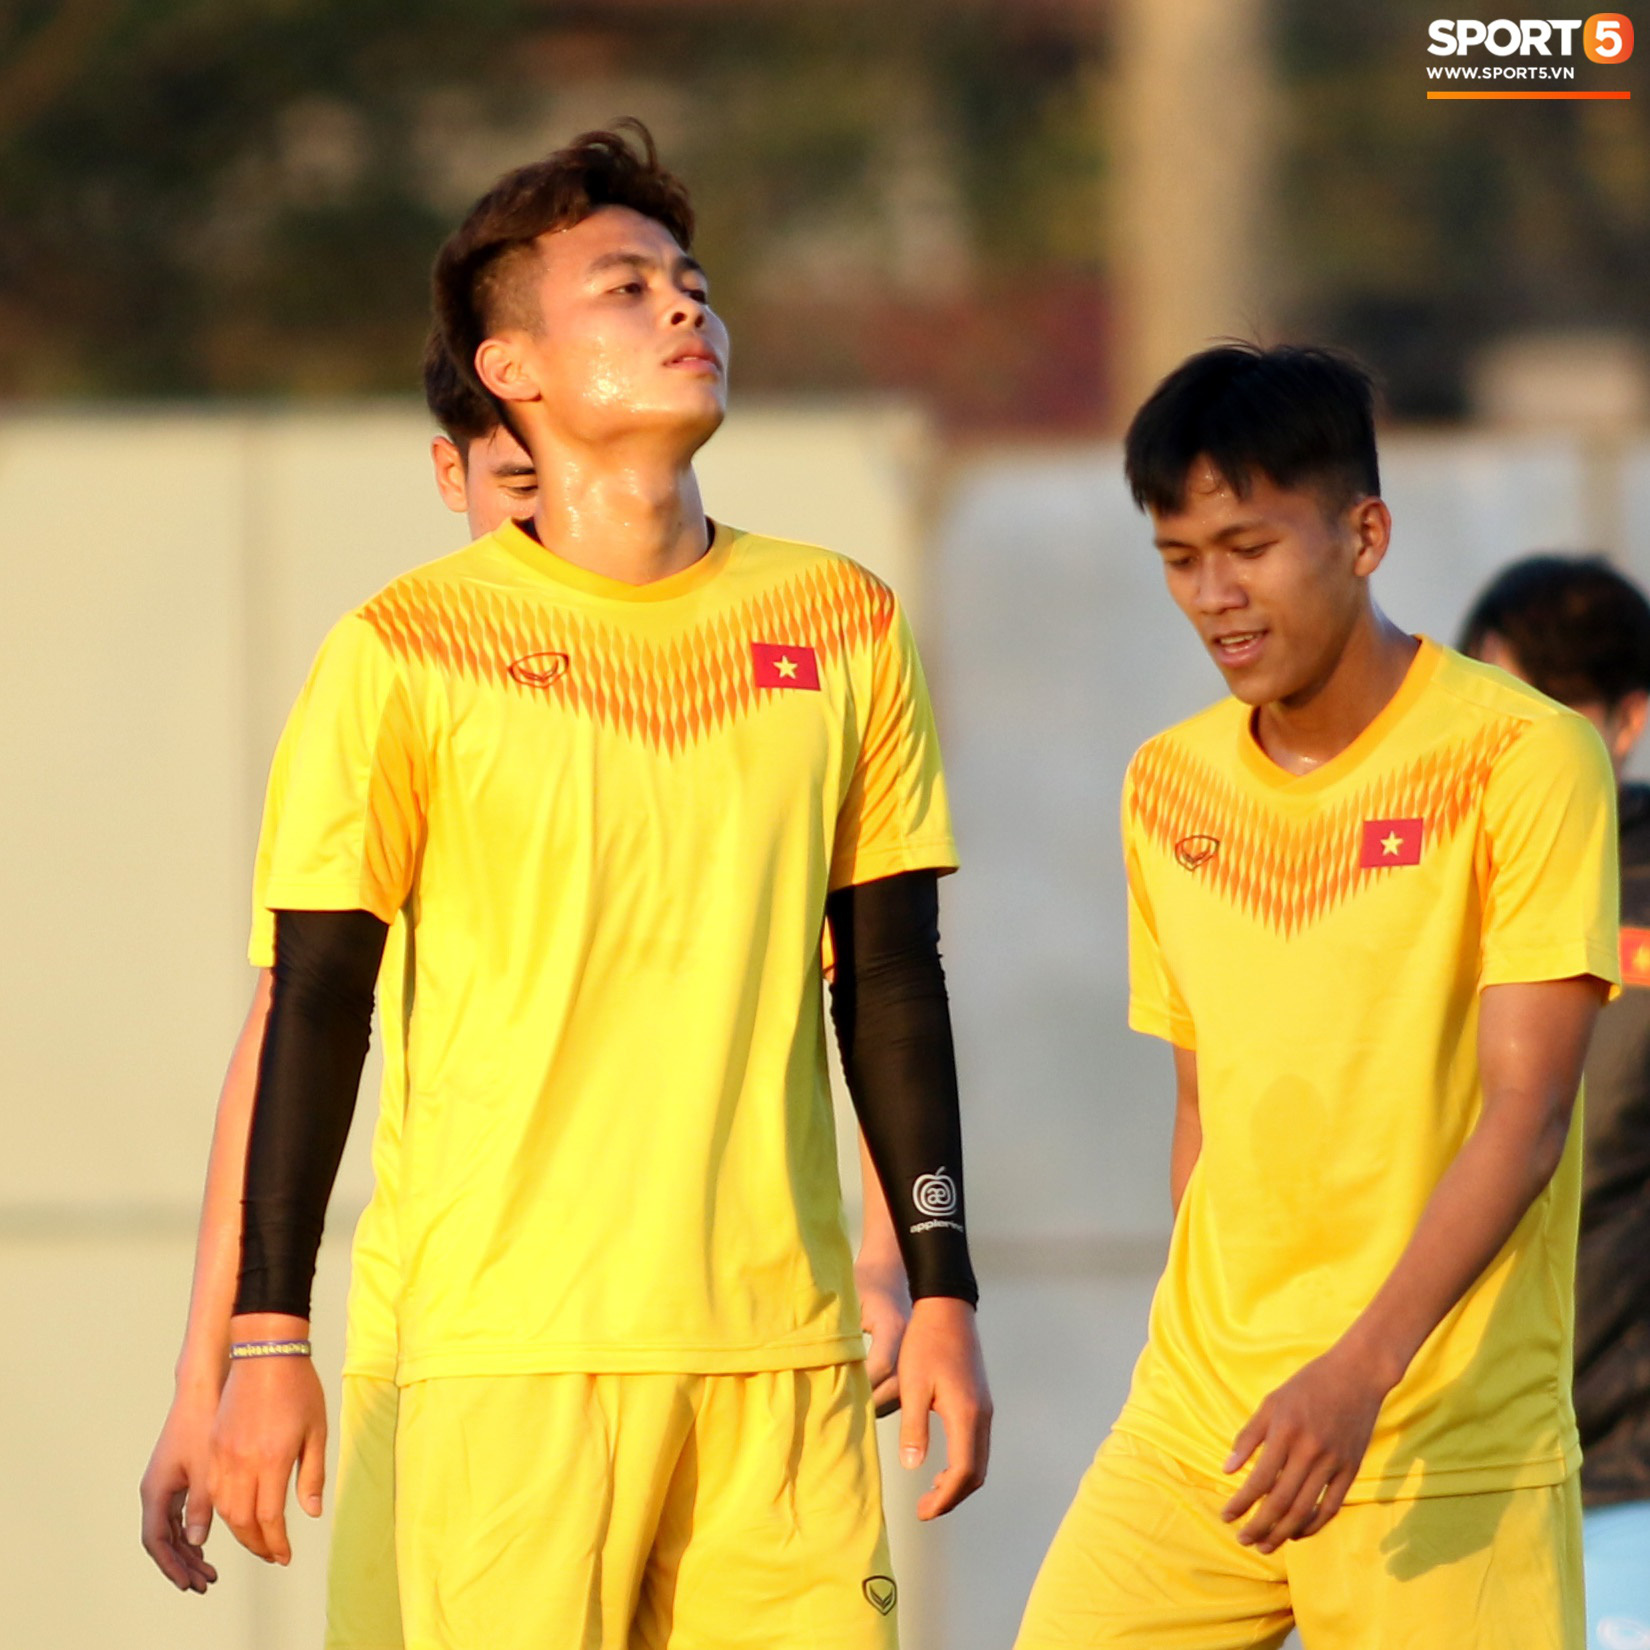 Cái kết sấp mặt của trung vệ U23 Việt Nam sau khi bị thầy Park nhéo tai nhắc nhở - Ảnh 7.